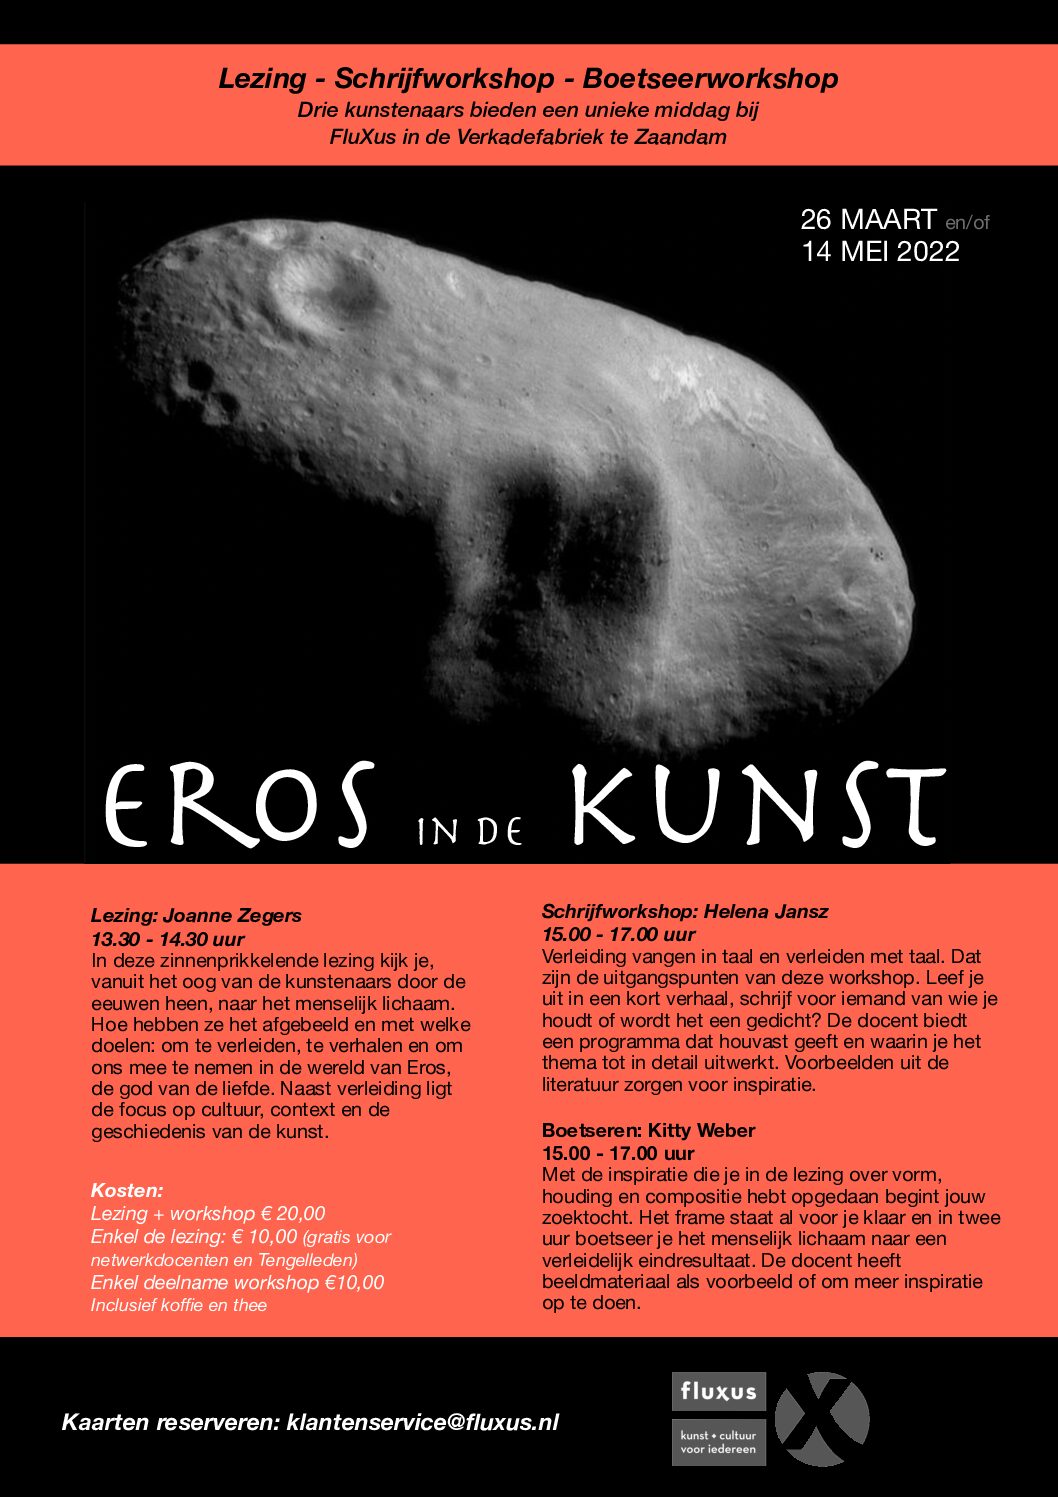 Eros in de Kunst, inspiratielezing FluXus met 2 workshops